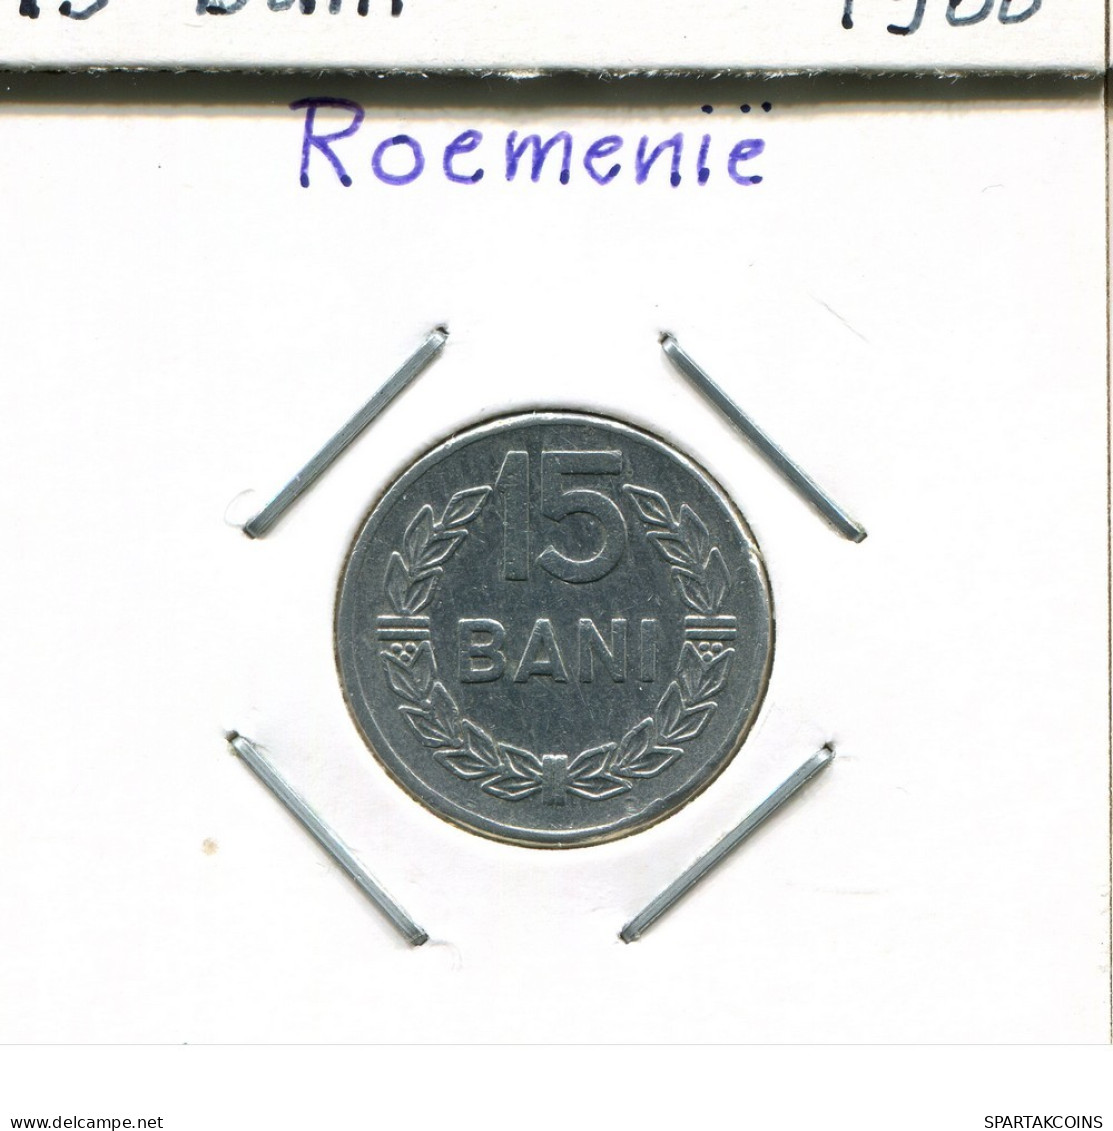 15 BANI 1975 ROMANIA Coin #AP650.2.U.A - Roumanie